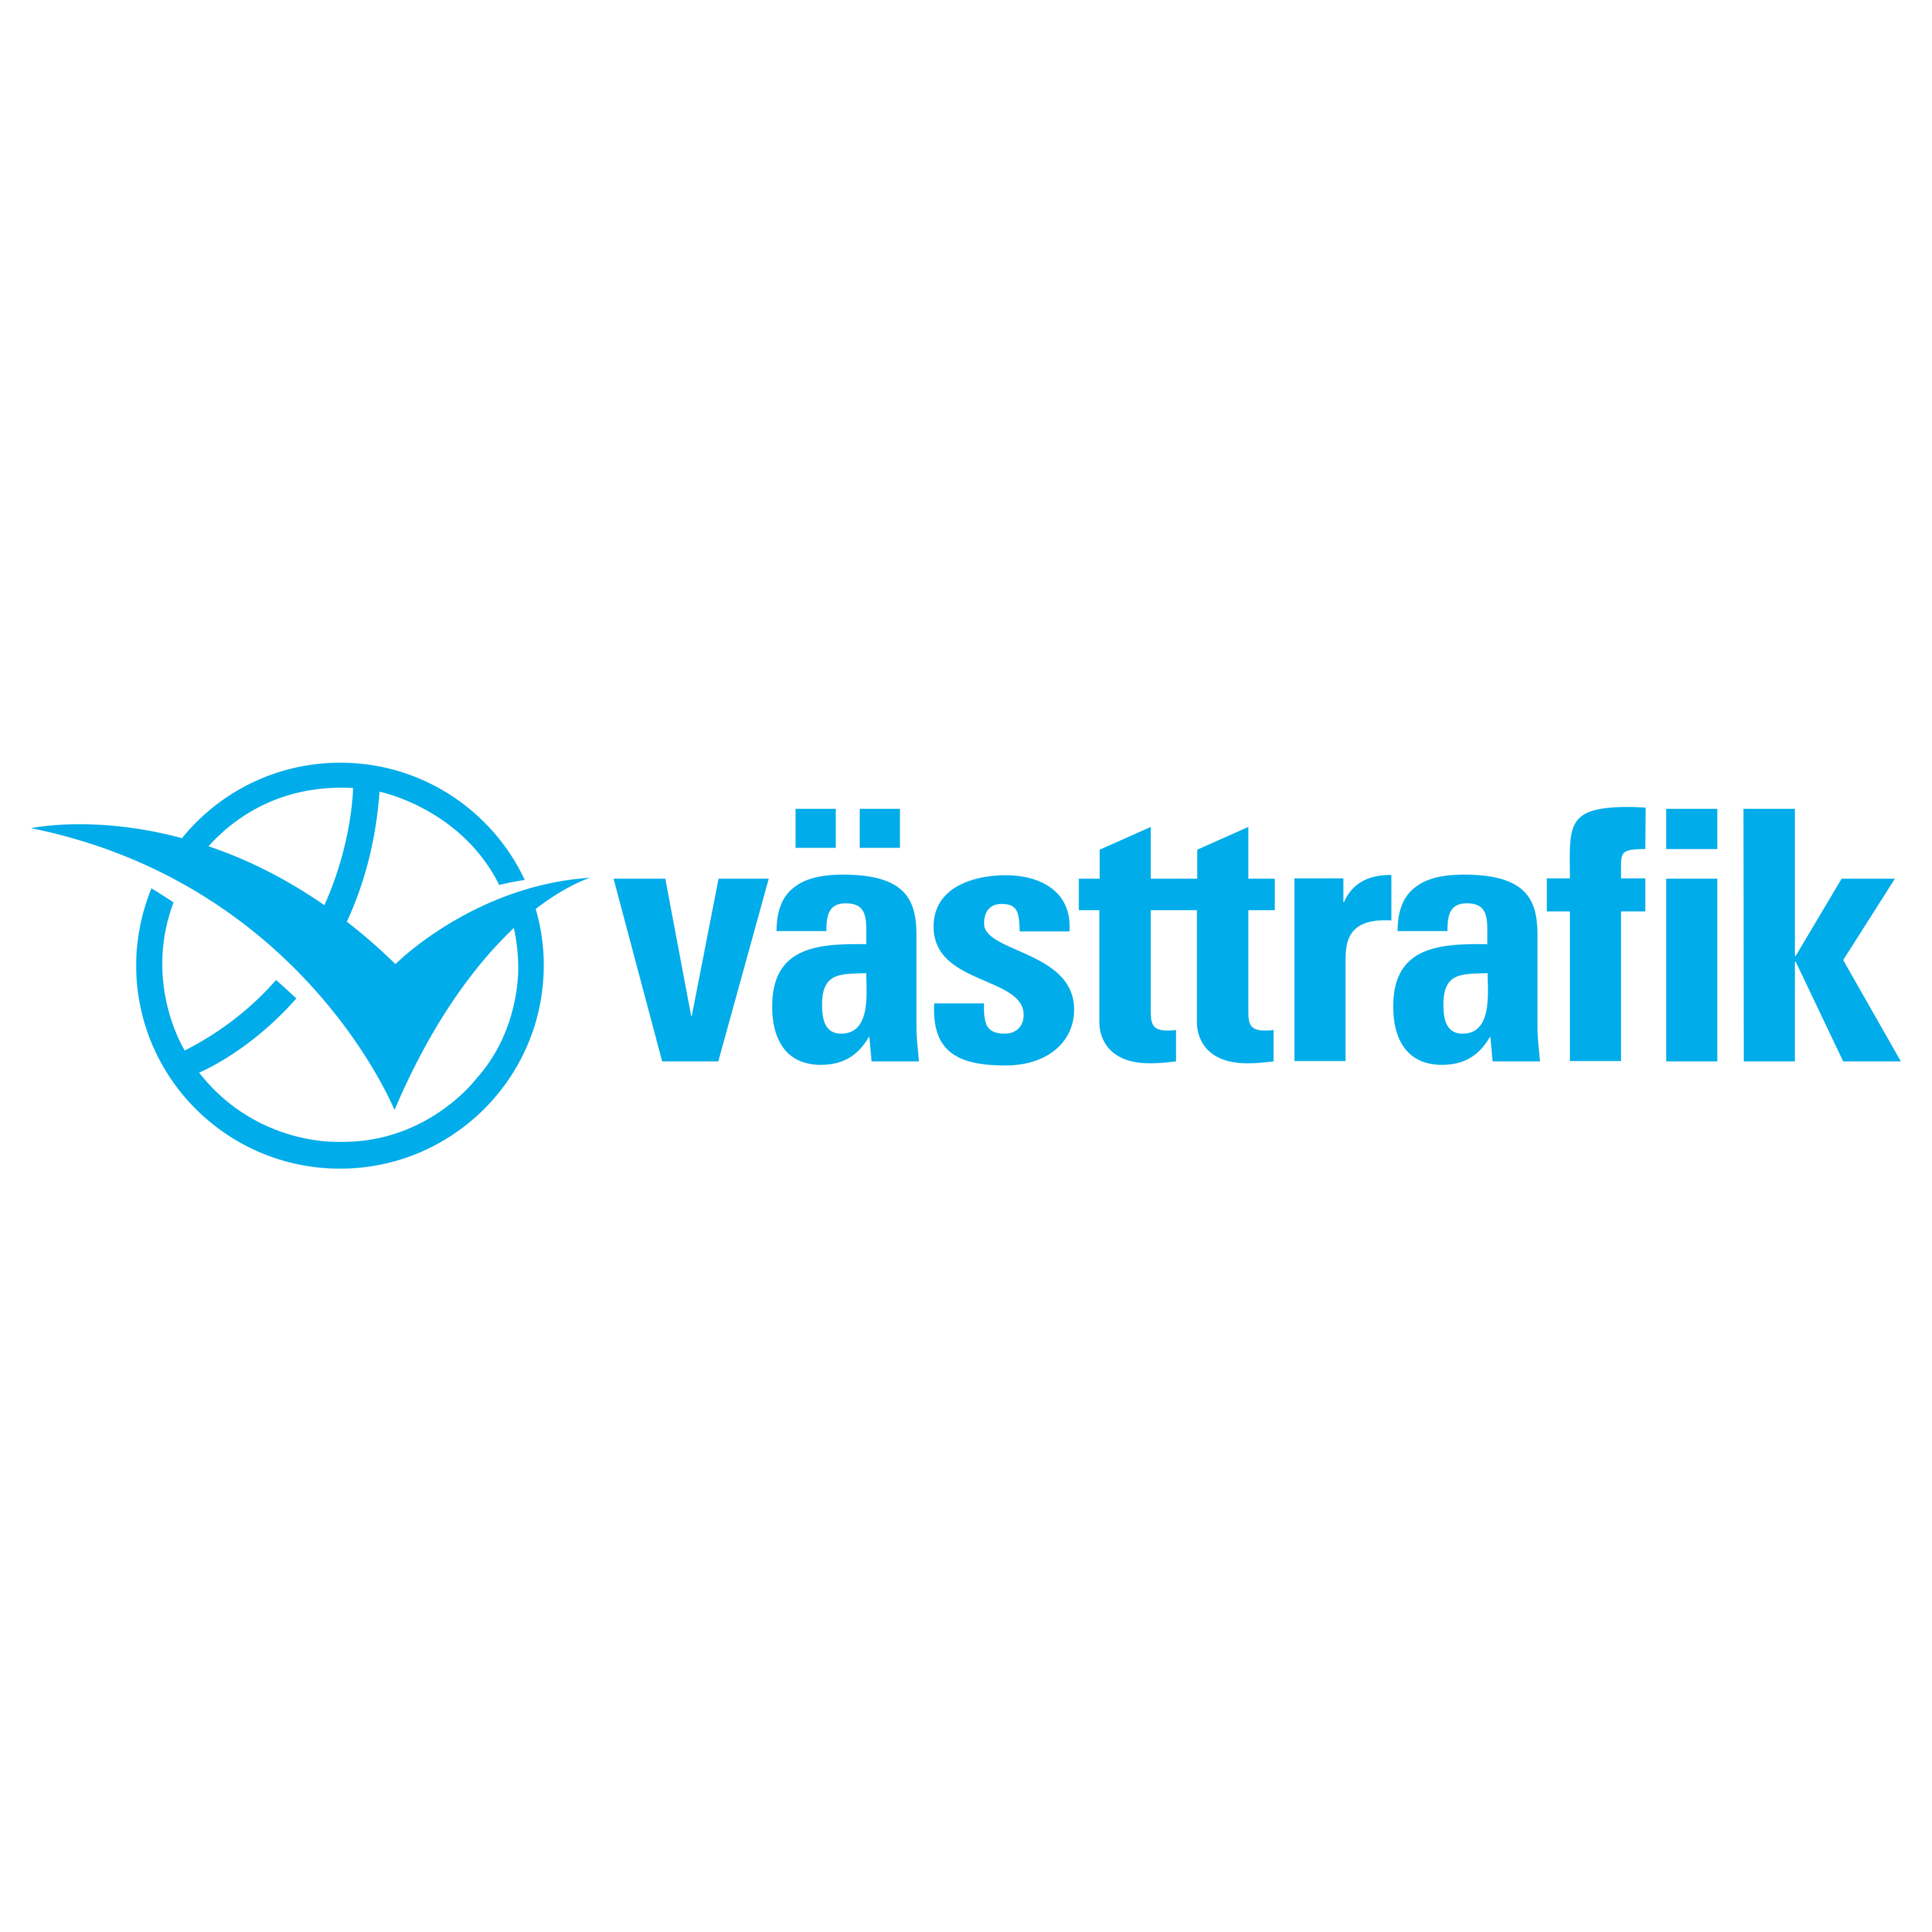 Vasttrafik Logo Transparent Image